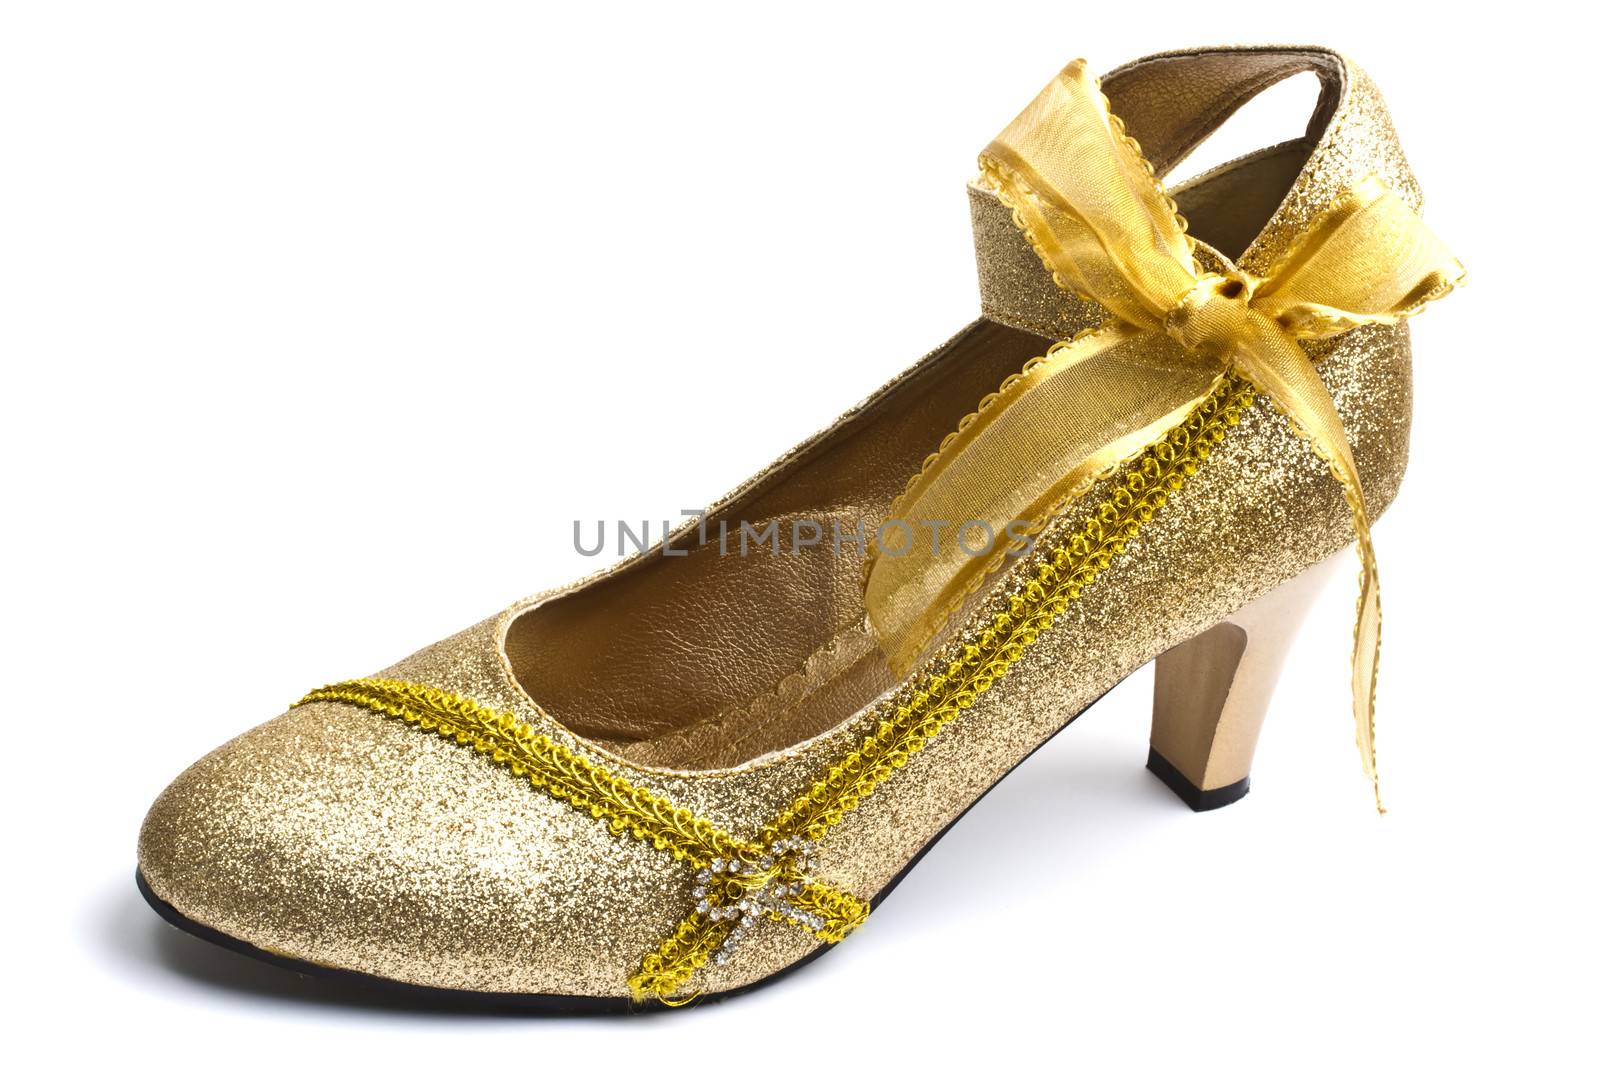 Beautiful golden shoe by ibphoto